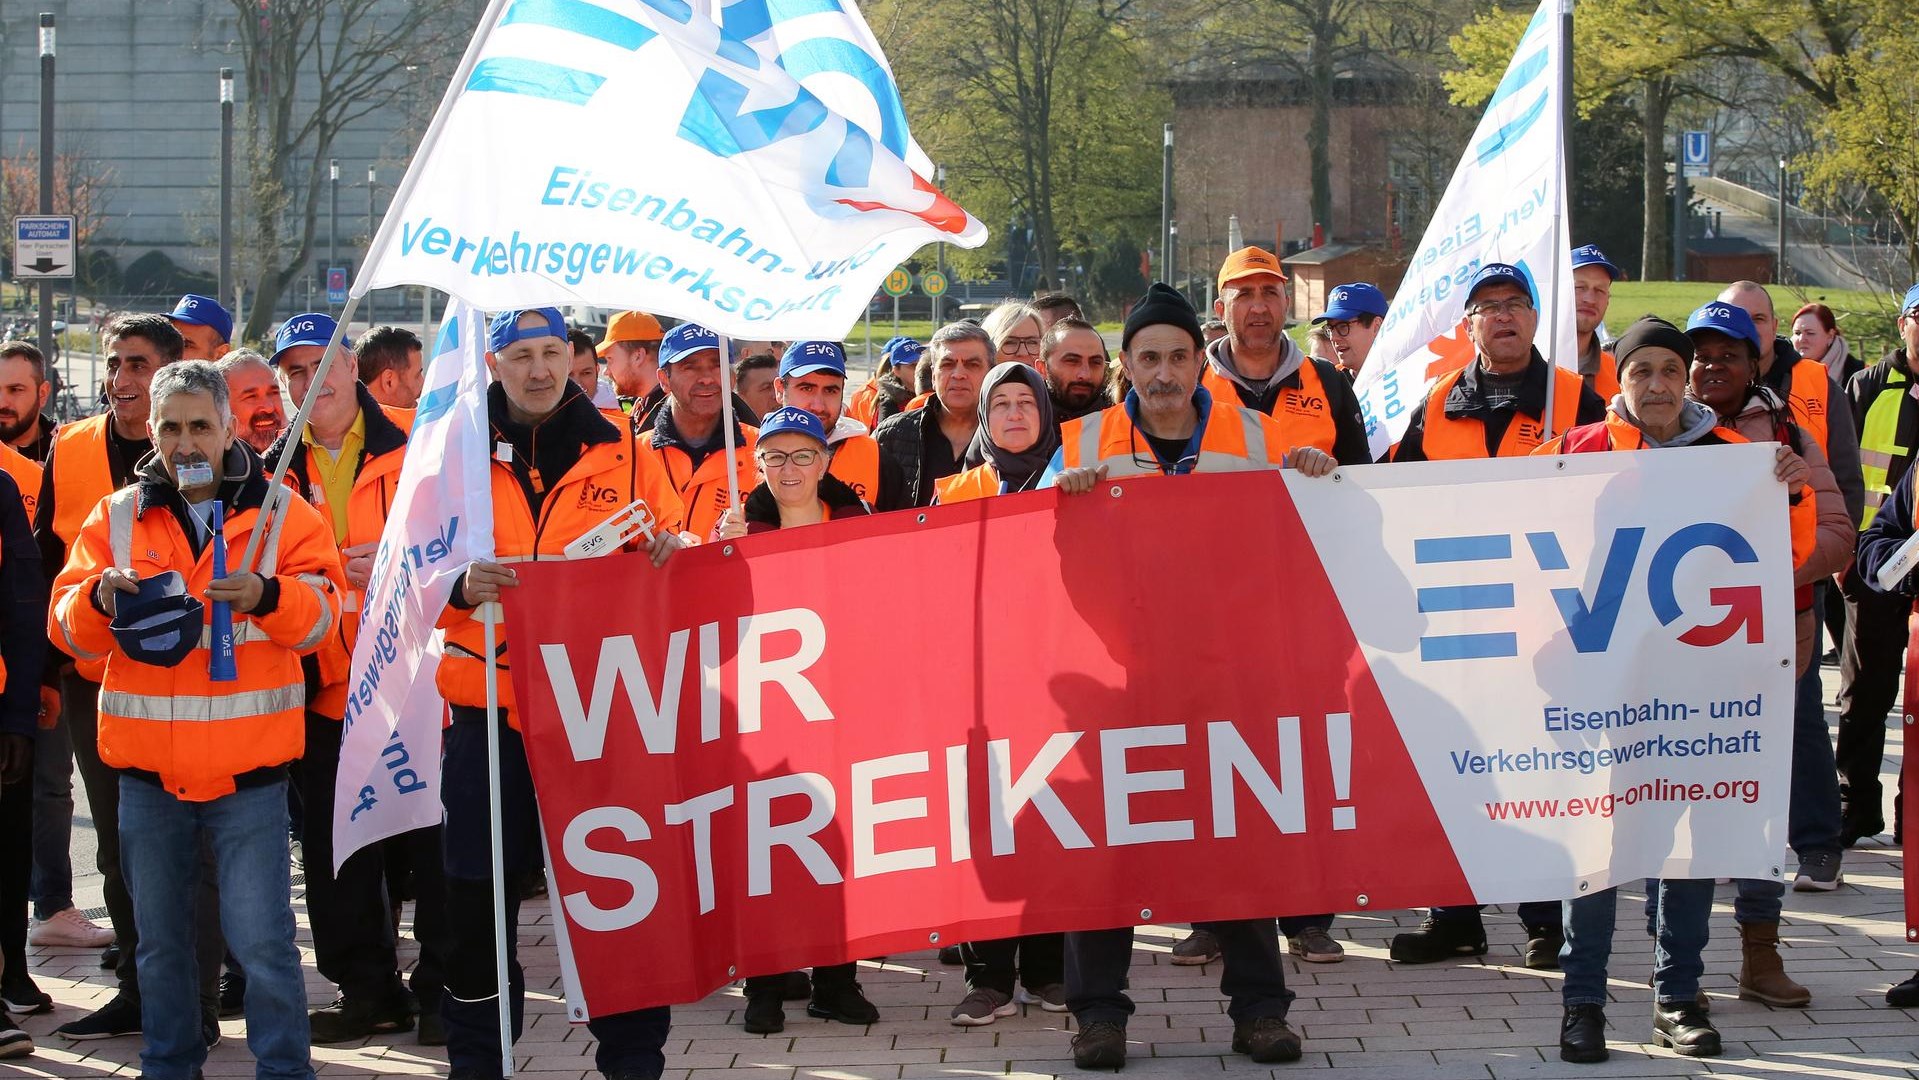 In Deutschland ein neuer großer Streik im Verkehrswesen